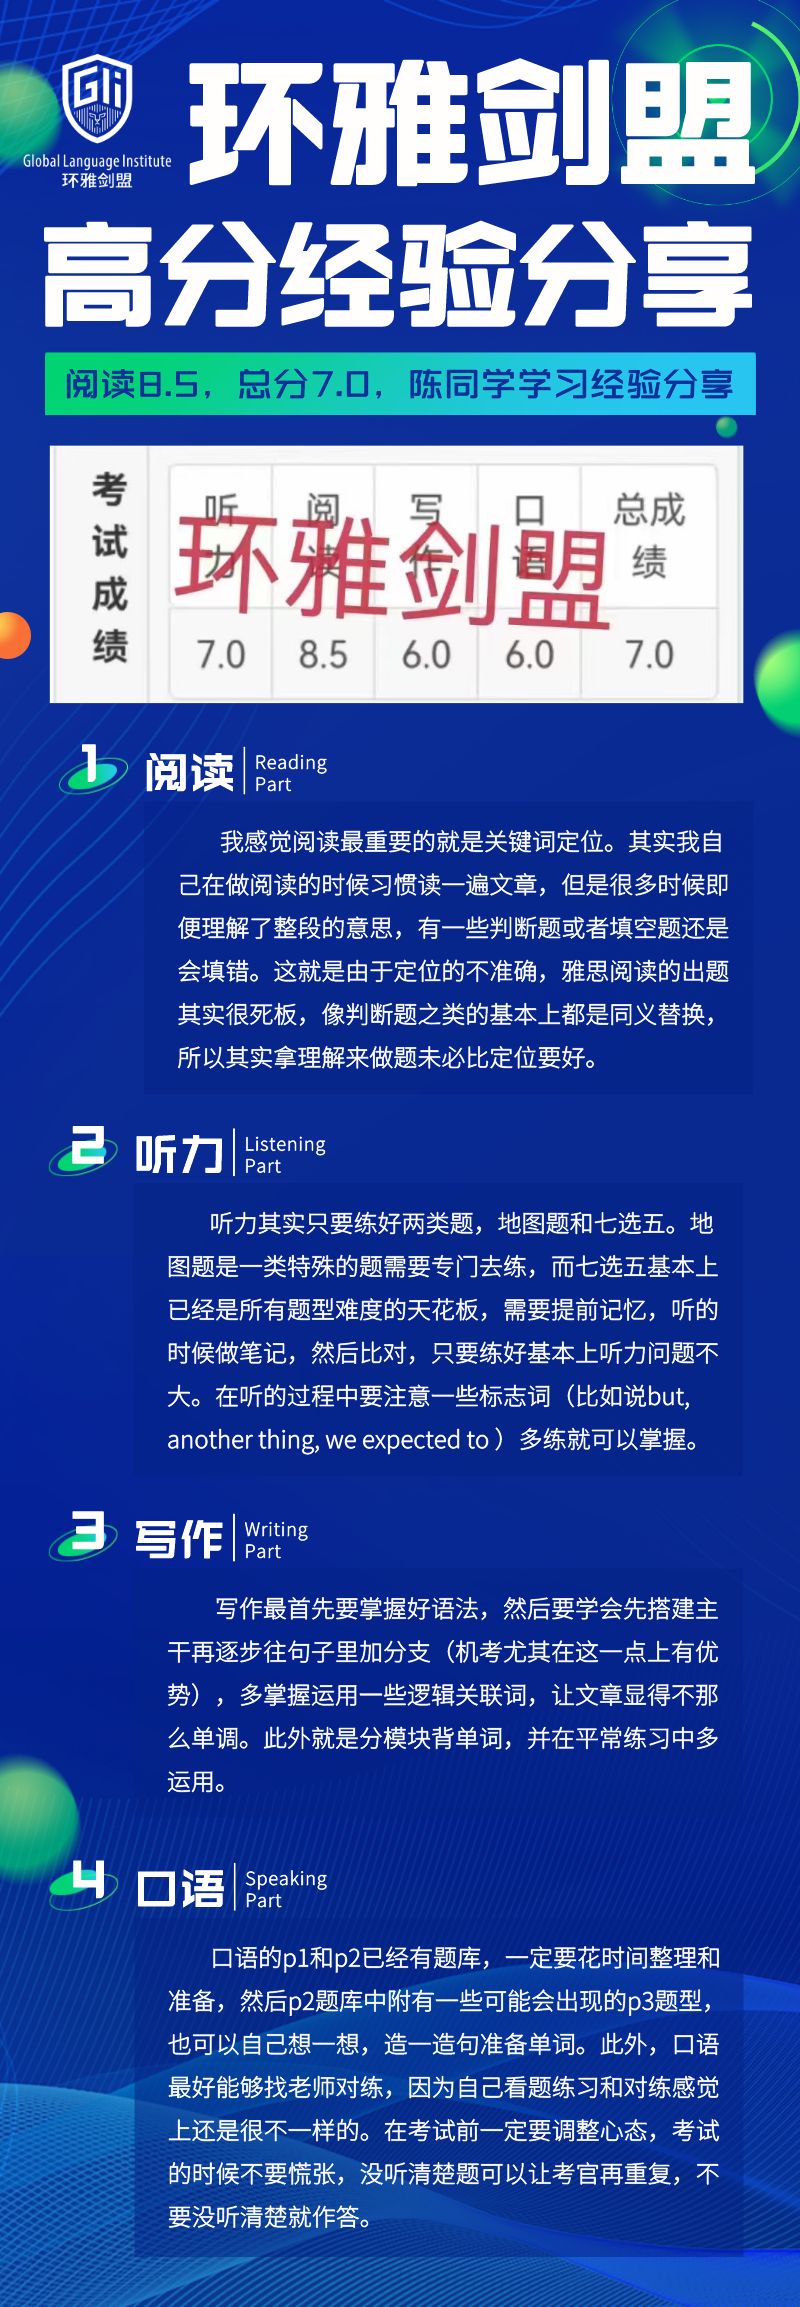 蓝色科技风热点快讯宣传长图海报__2022-08-19 15_22_53.png